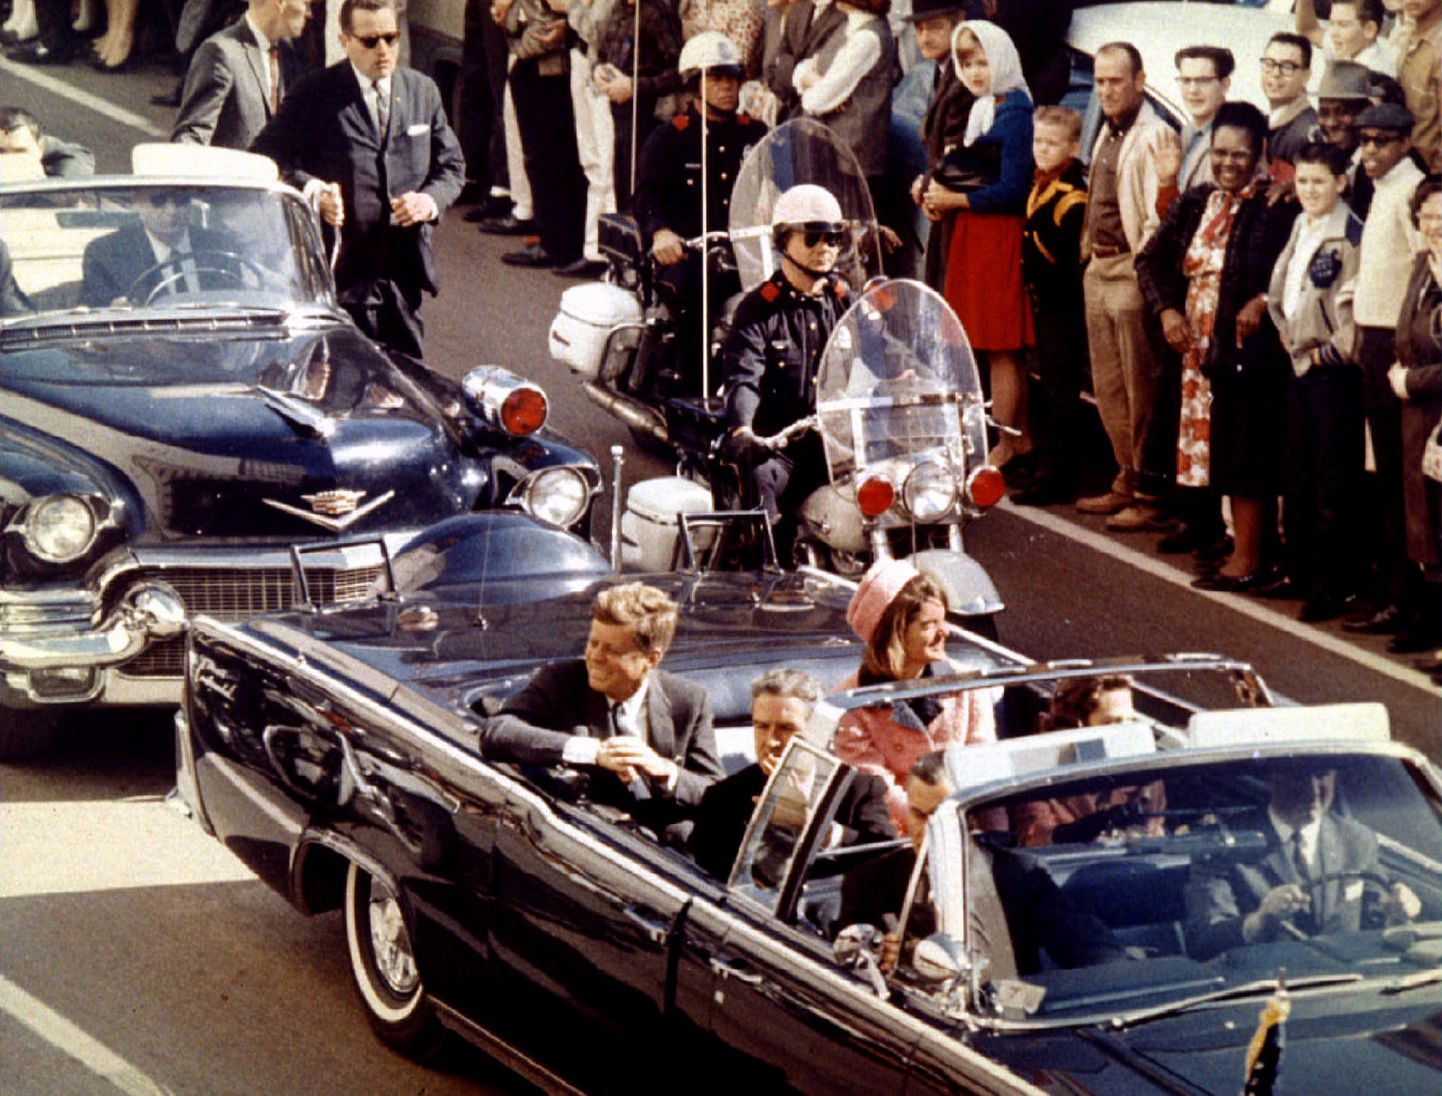 USA president John F. Kennedy, esimene leedi Jaqueline Kennedy ja Texase kuberner John Connally sõitmas limusiiniga Dallases 22. novembril 1963 mõni hetk enne seda, kui presidenti tulistatakse.